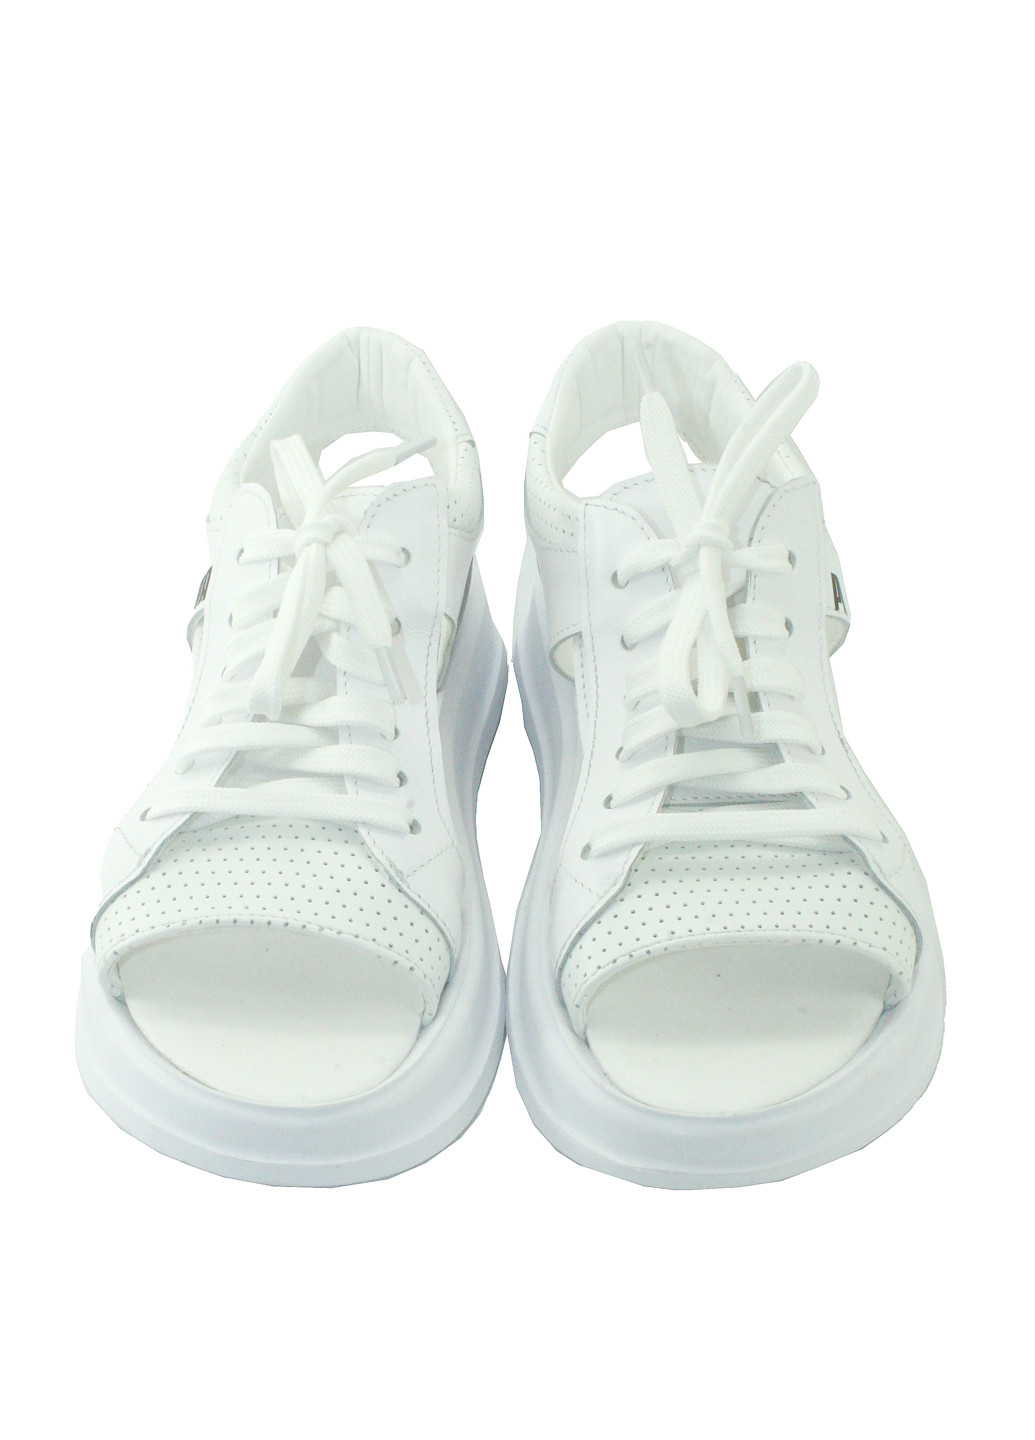 Белые босоножки Mila на шнурках с перфорацией, с белой подошвой